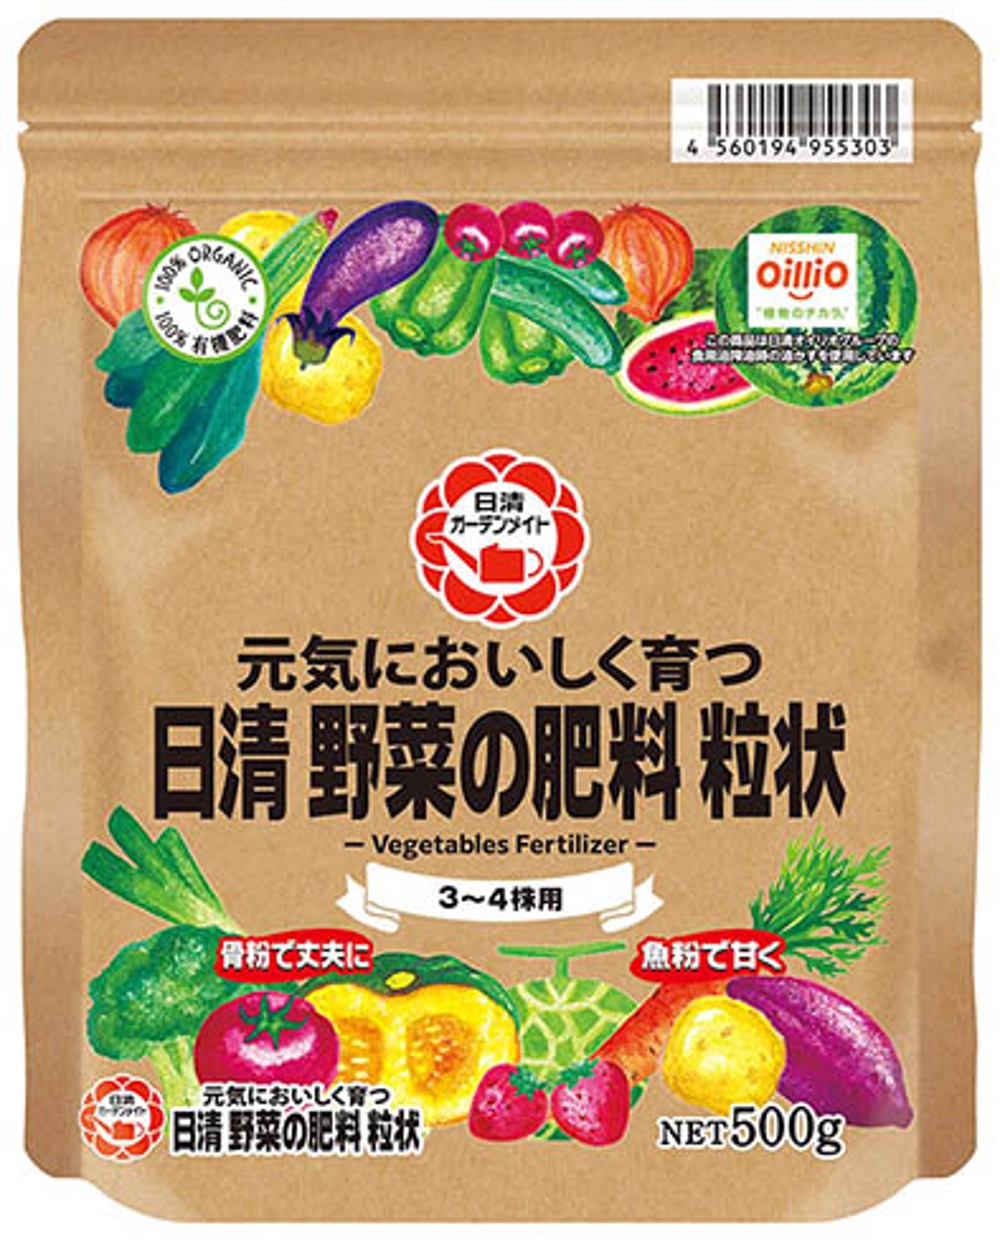 【日清ガーデンメイト】野菜の肥料